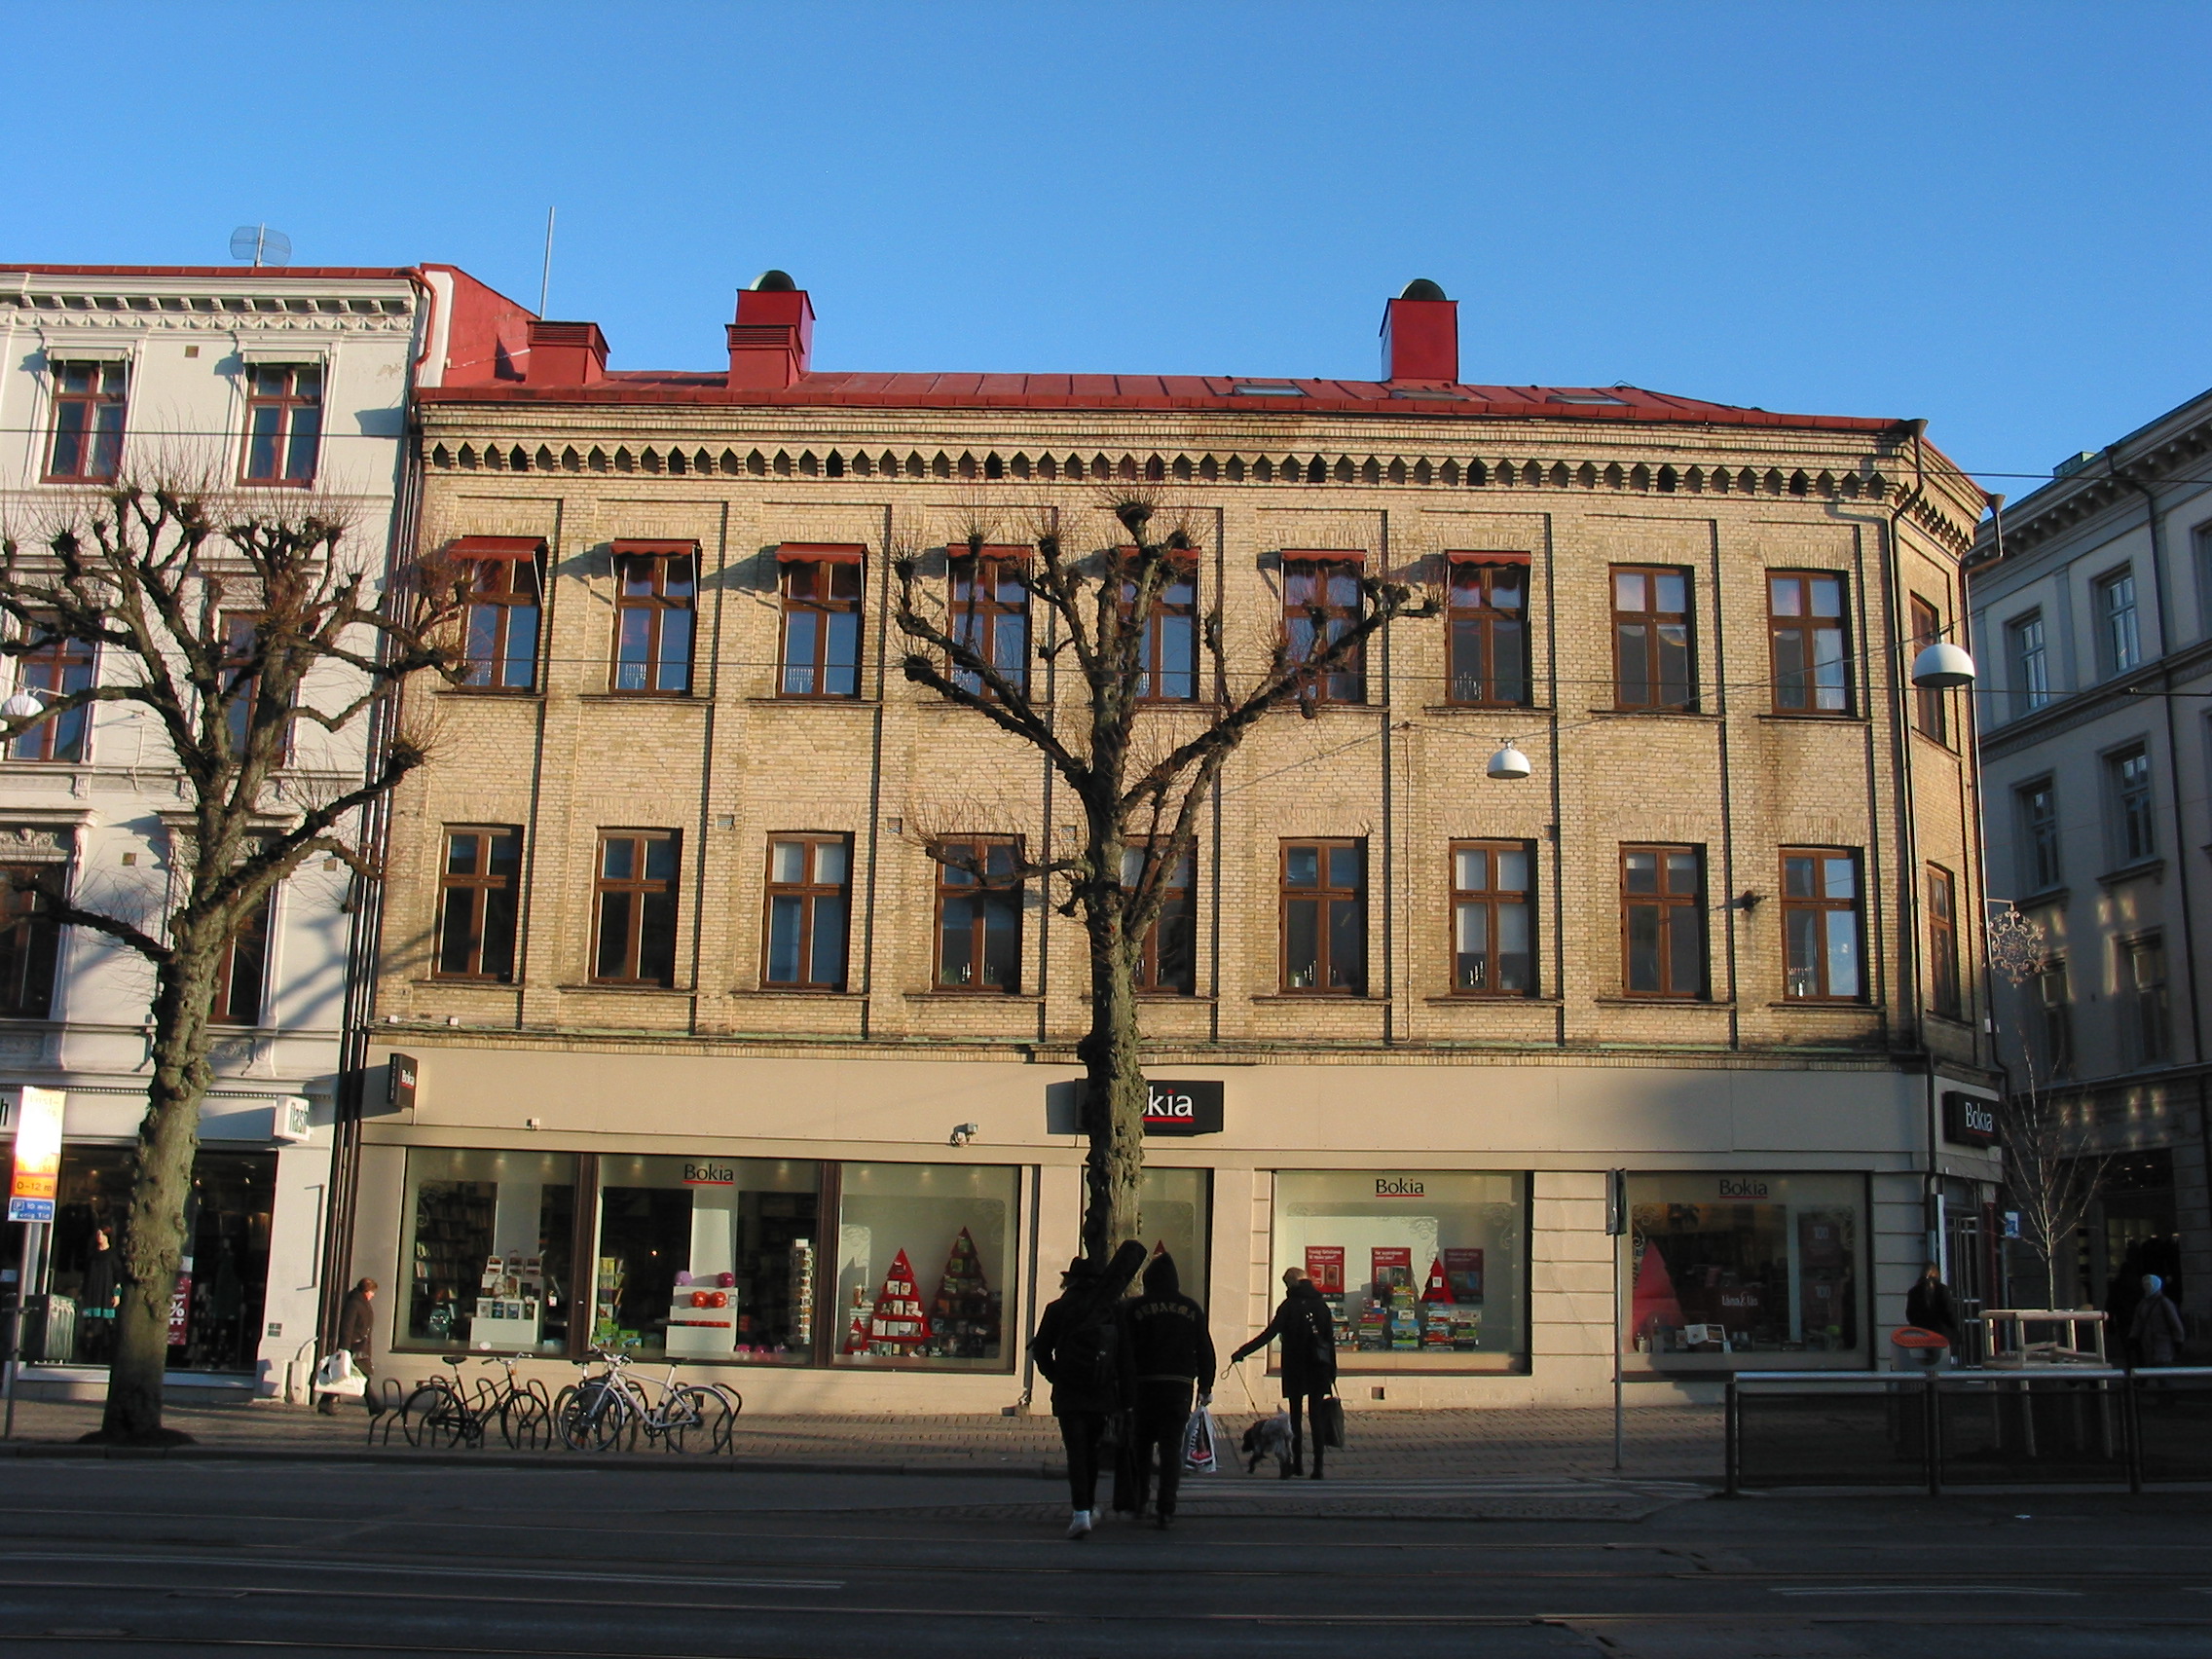 Affärshus med Wettergrens bokhandel. Trevåningshus med liten kringbyggd gård. Mot gatan fasad i gult tegel med mönstermurning. Vid gården röd tegelfasad. Huset är ett viktigt hörn i innerstaden. Byggnadens proportioner och fasader i gult tegel är typiska för 1860-talets Göteborg.